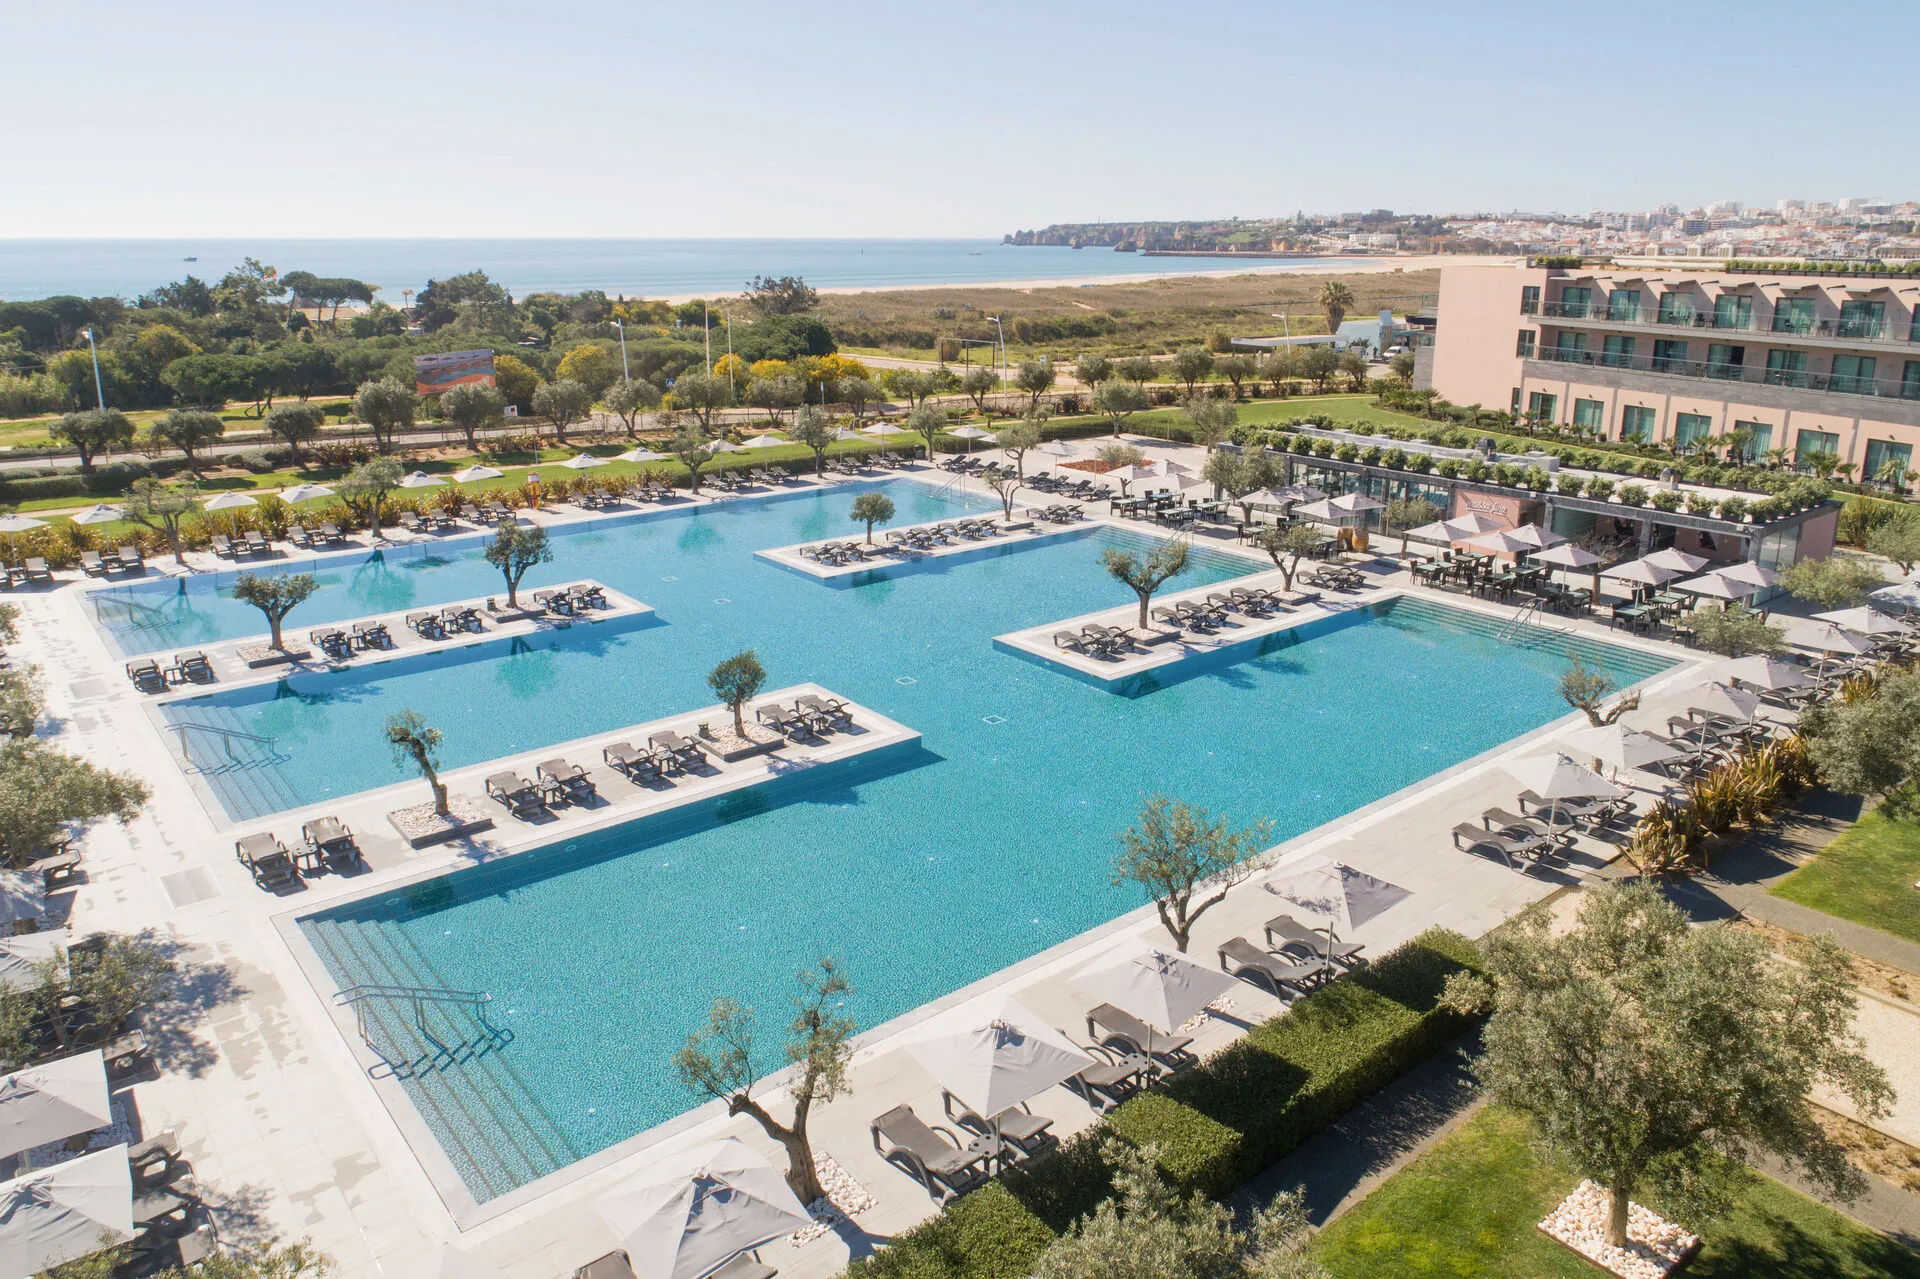 Portugal - Algarve - Faro - Hotel Vila Galé Lagos 4*